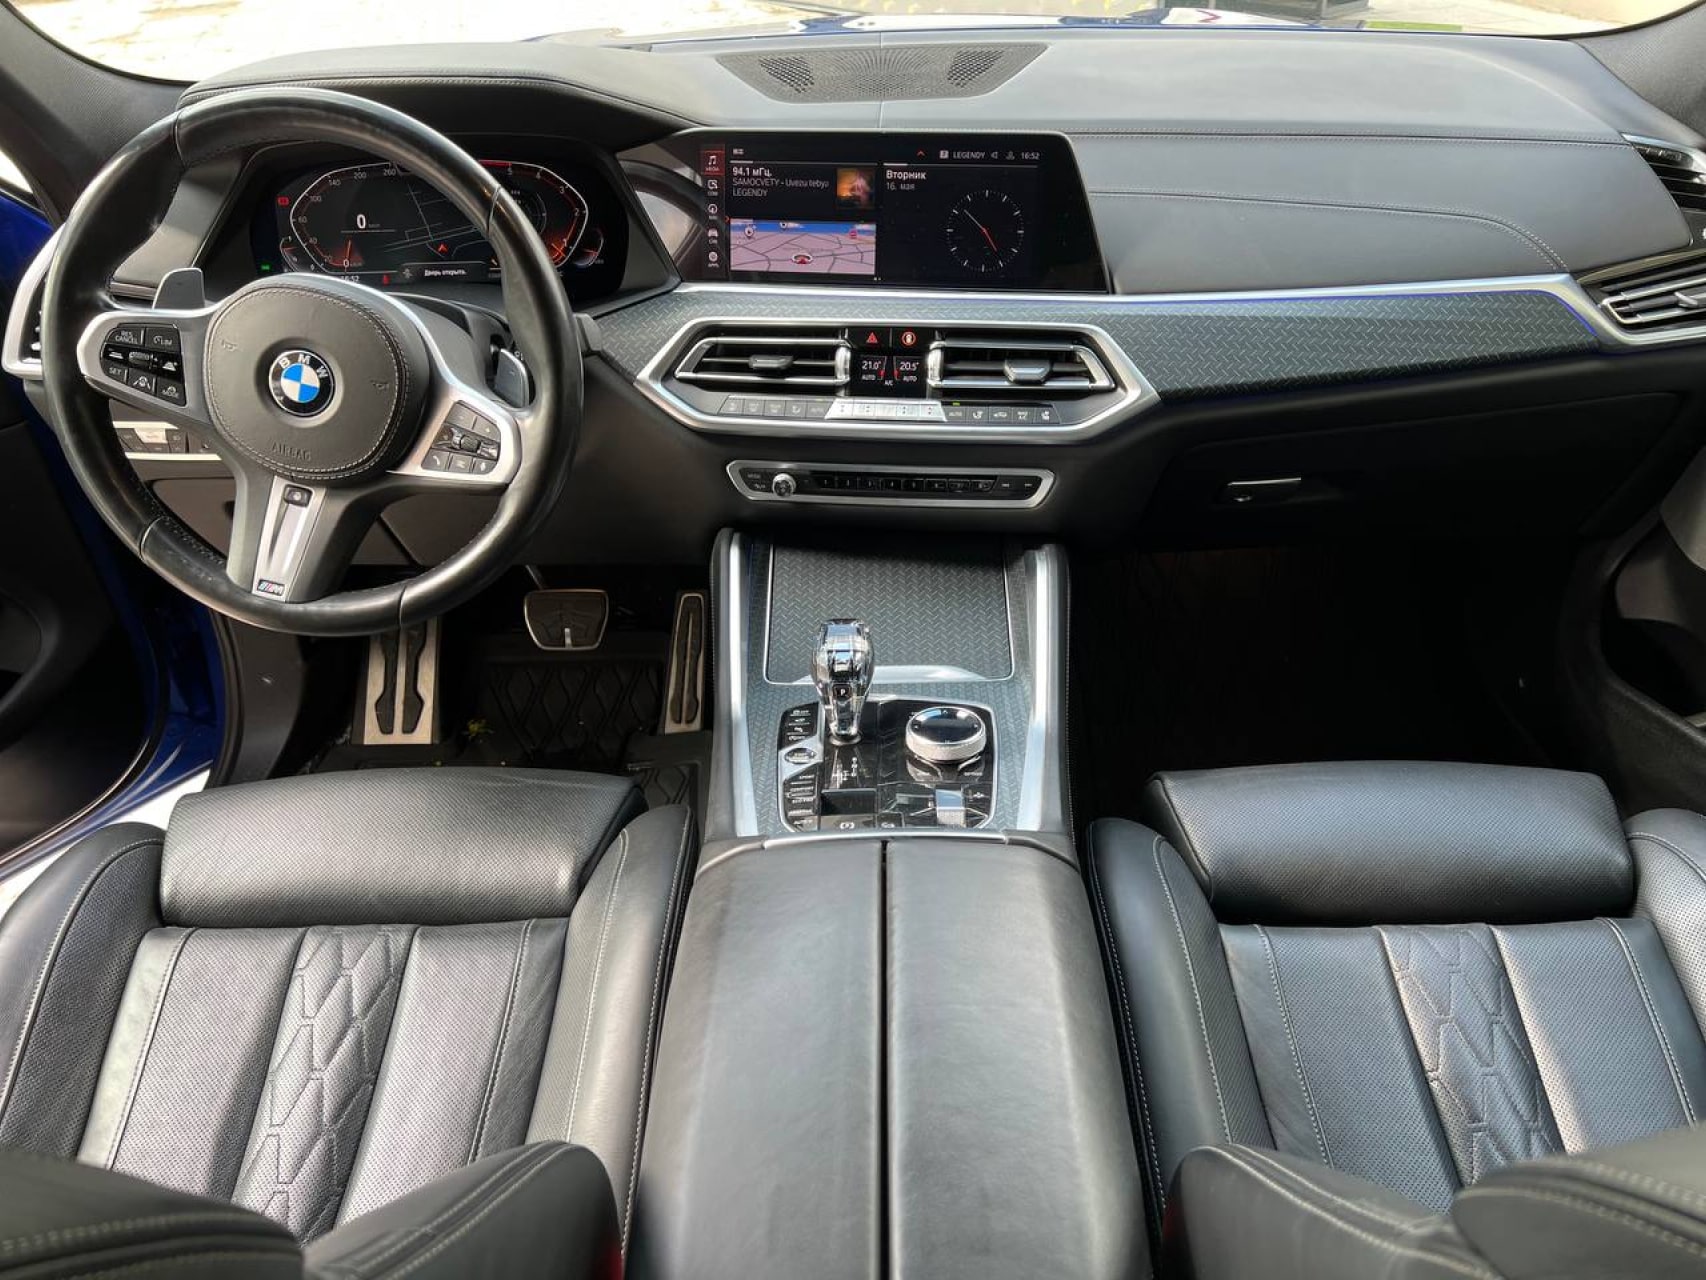 Аренда  BMW X6 G06 M-Sport Pro  6 класса 2020 года в городе Минск от 290 $/сутки,  двигатель: ДТ , объем 3.0 литров, КАСКО (Мультидрайв), без водителя, вид 7 - West Group